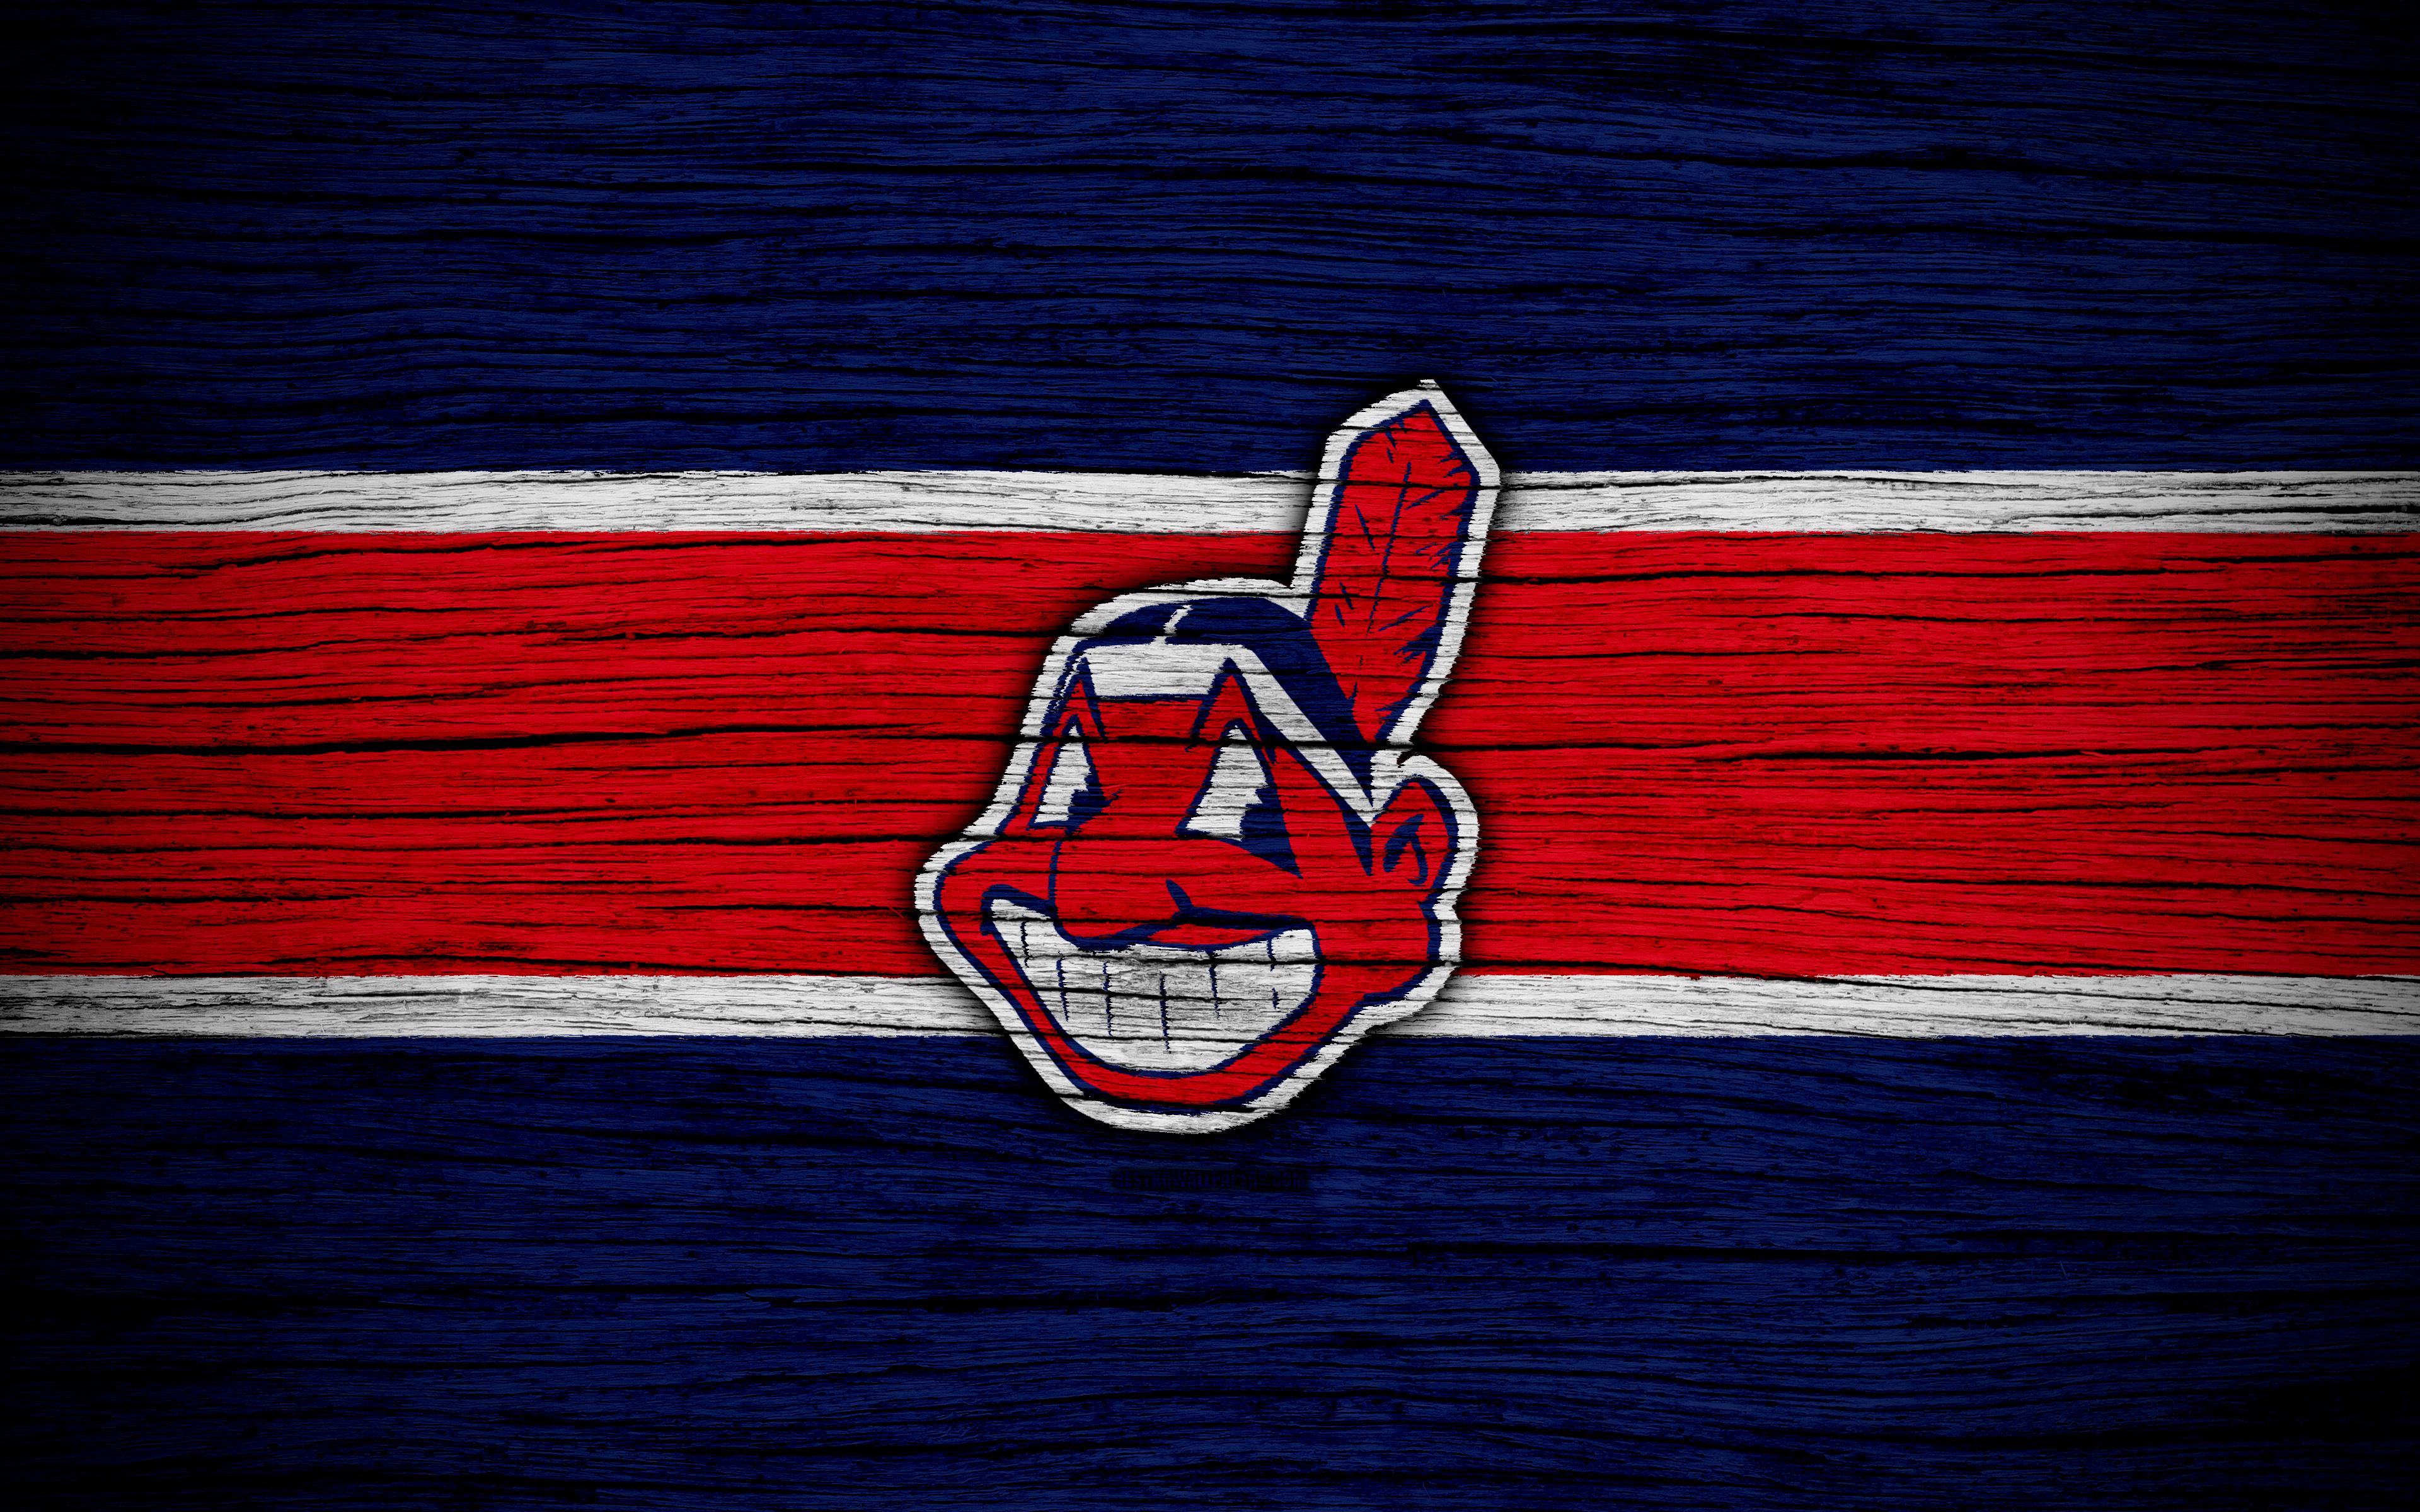 Download wallpaper Cleveland Indians, 4k, MLB, baseball